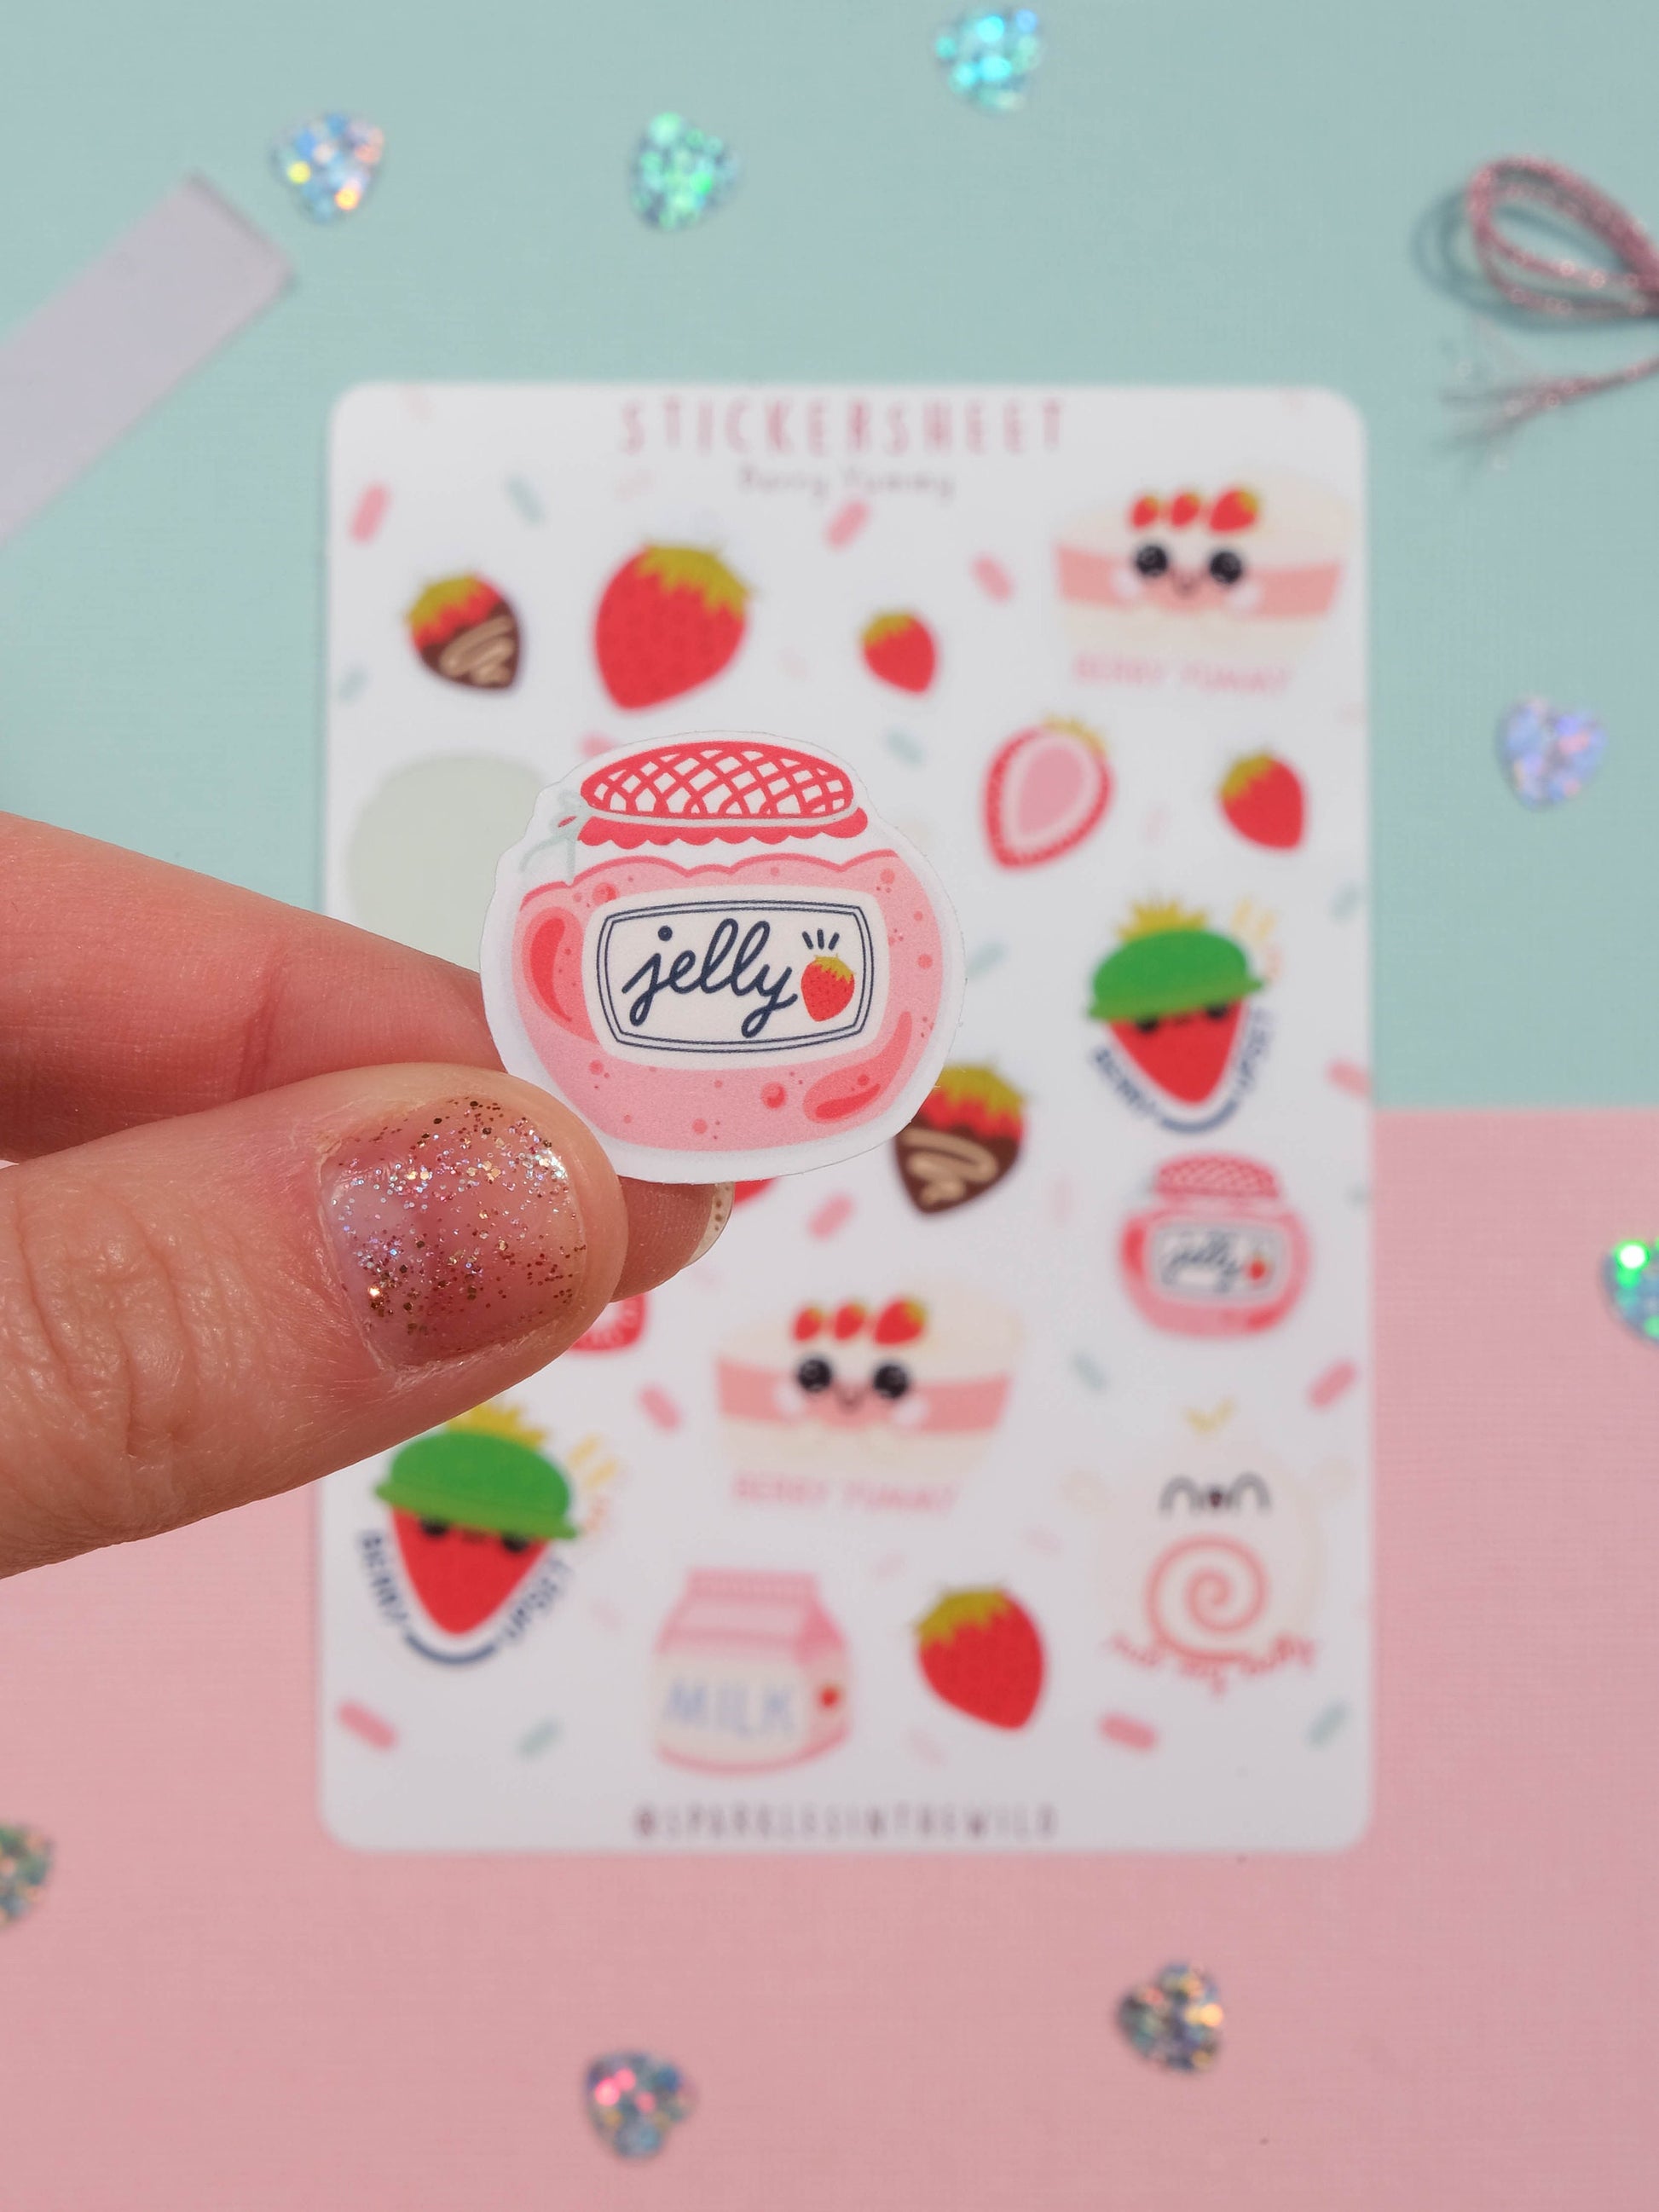 Sticker sheet Kawaii Strawberries - Sticker Sheet Berries - Planner Stickers - Scrapbook Stickers - Set of Sticker for Bullet Journal